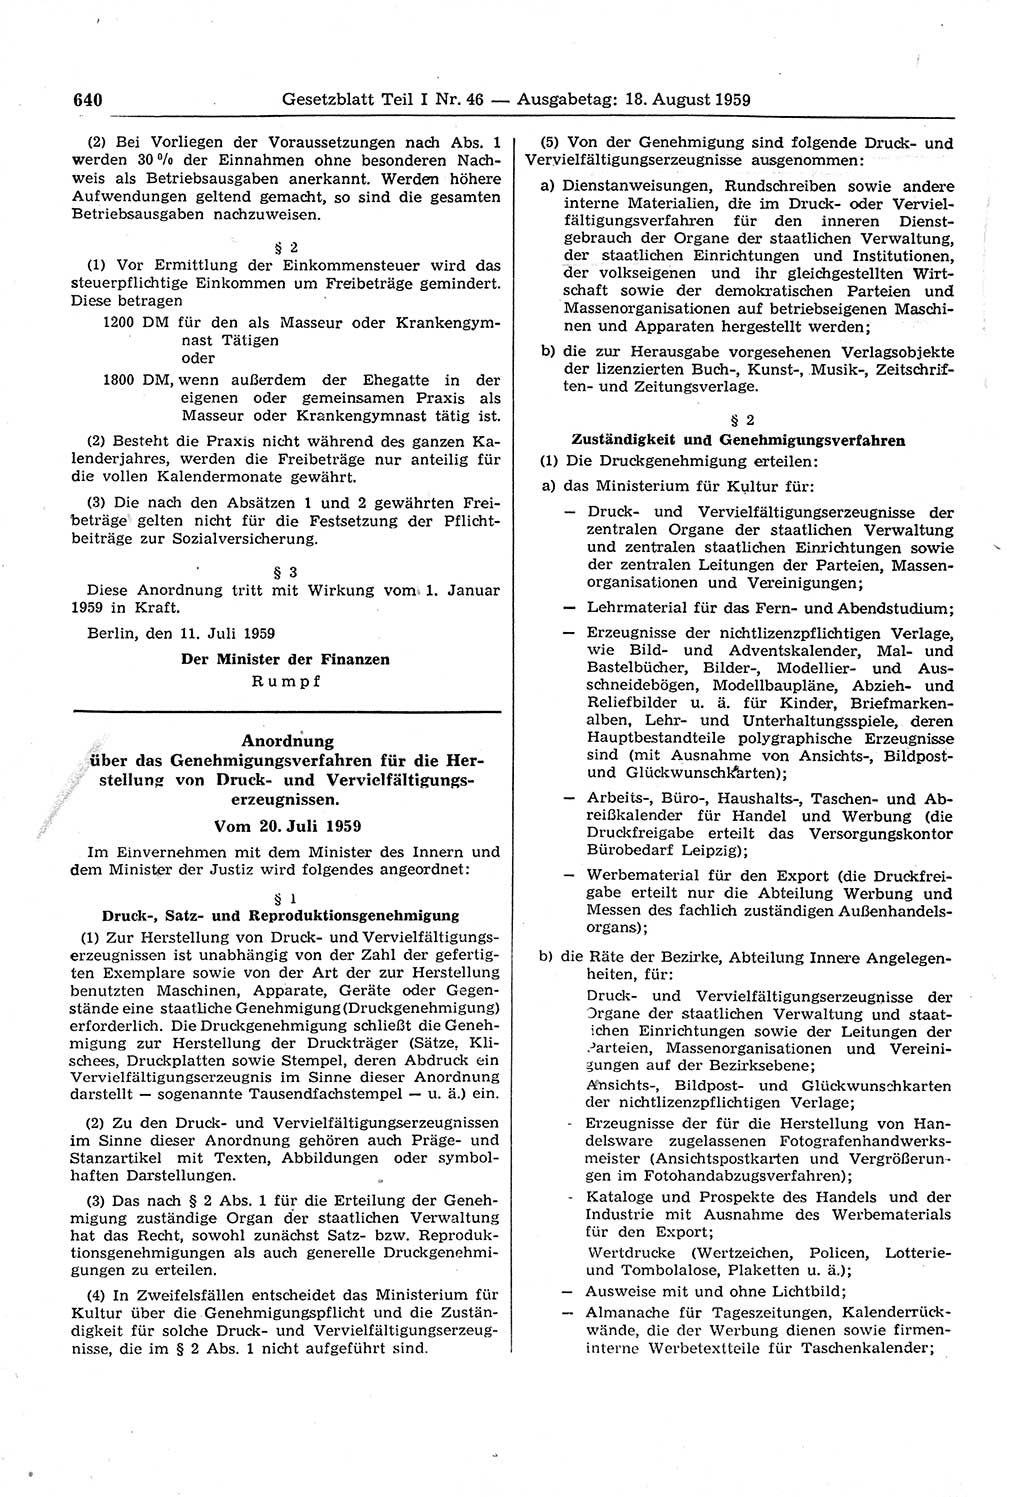 Gesetzblatt (GBl.) der Deutschen Demokratischen Republik (DDR) Teil Ⅰ 1959, Seite 640 (GBl. DDR Ⅰ 1959, S. 640)